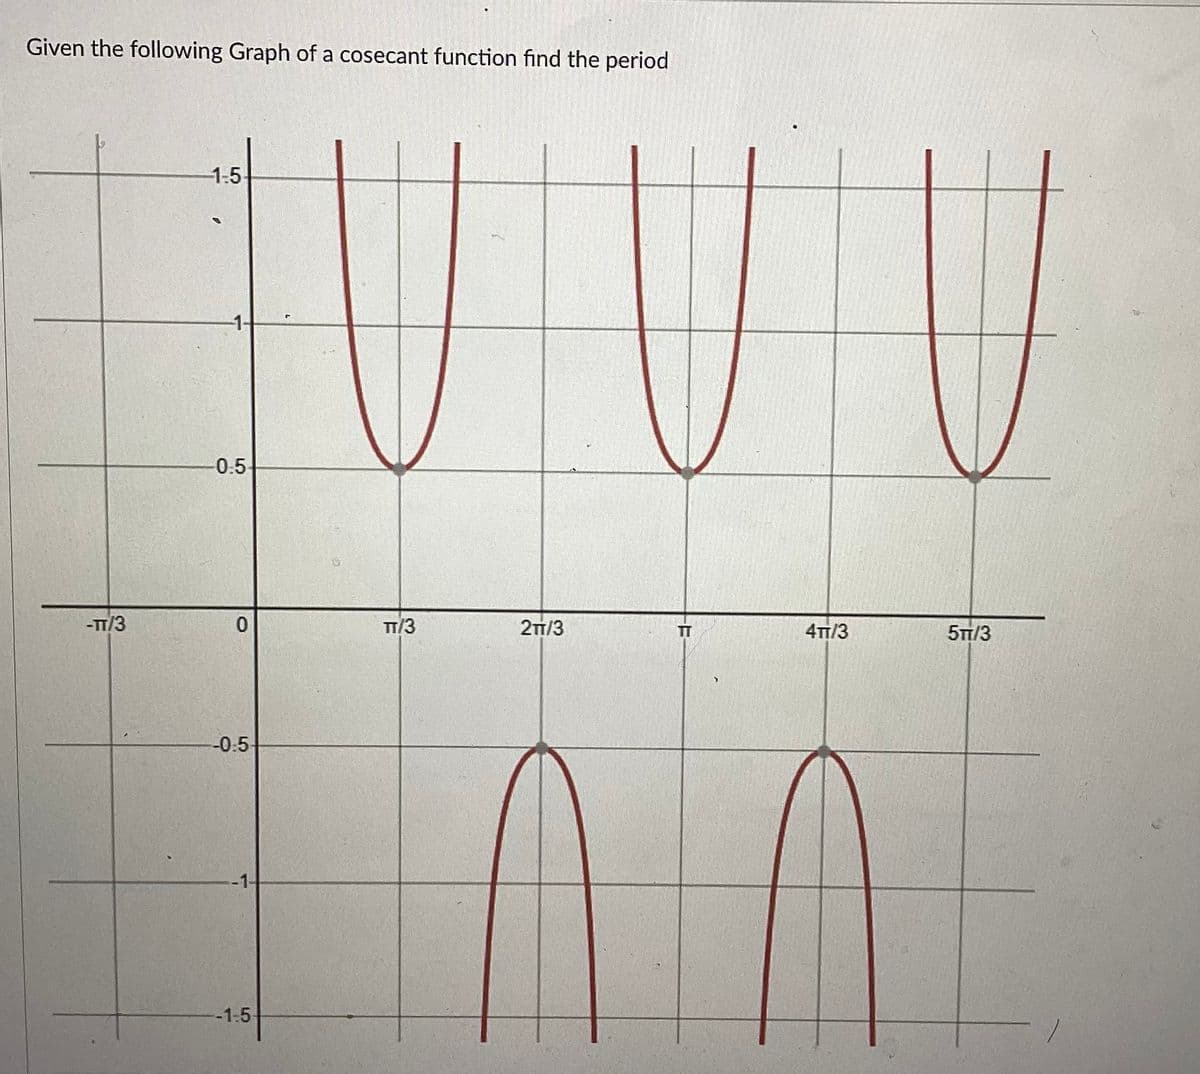 Given the following Graph of a cosecant function find the period
-TT/3
-1-5
-1-
-0.5-
0
-0.5
-1-
-1-5-
TT/3
2TT/3
TT
4TT/3
MA
5TT/3